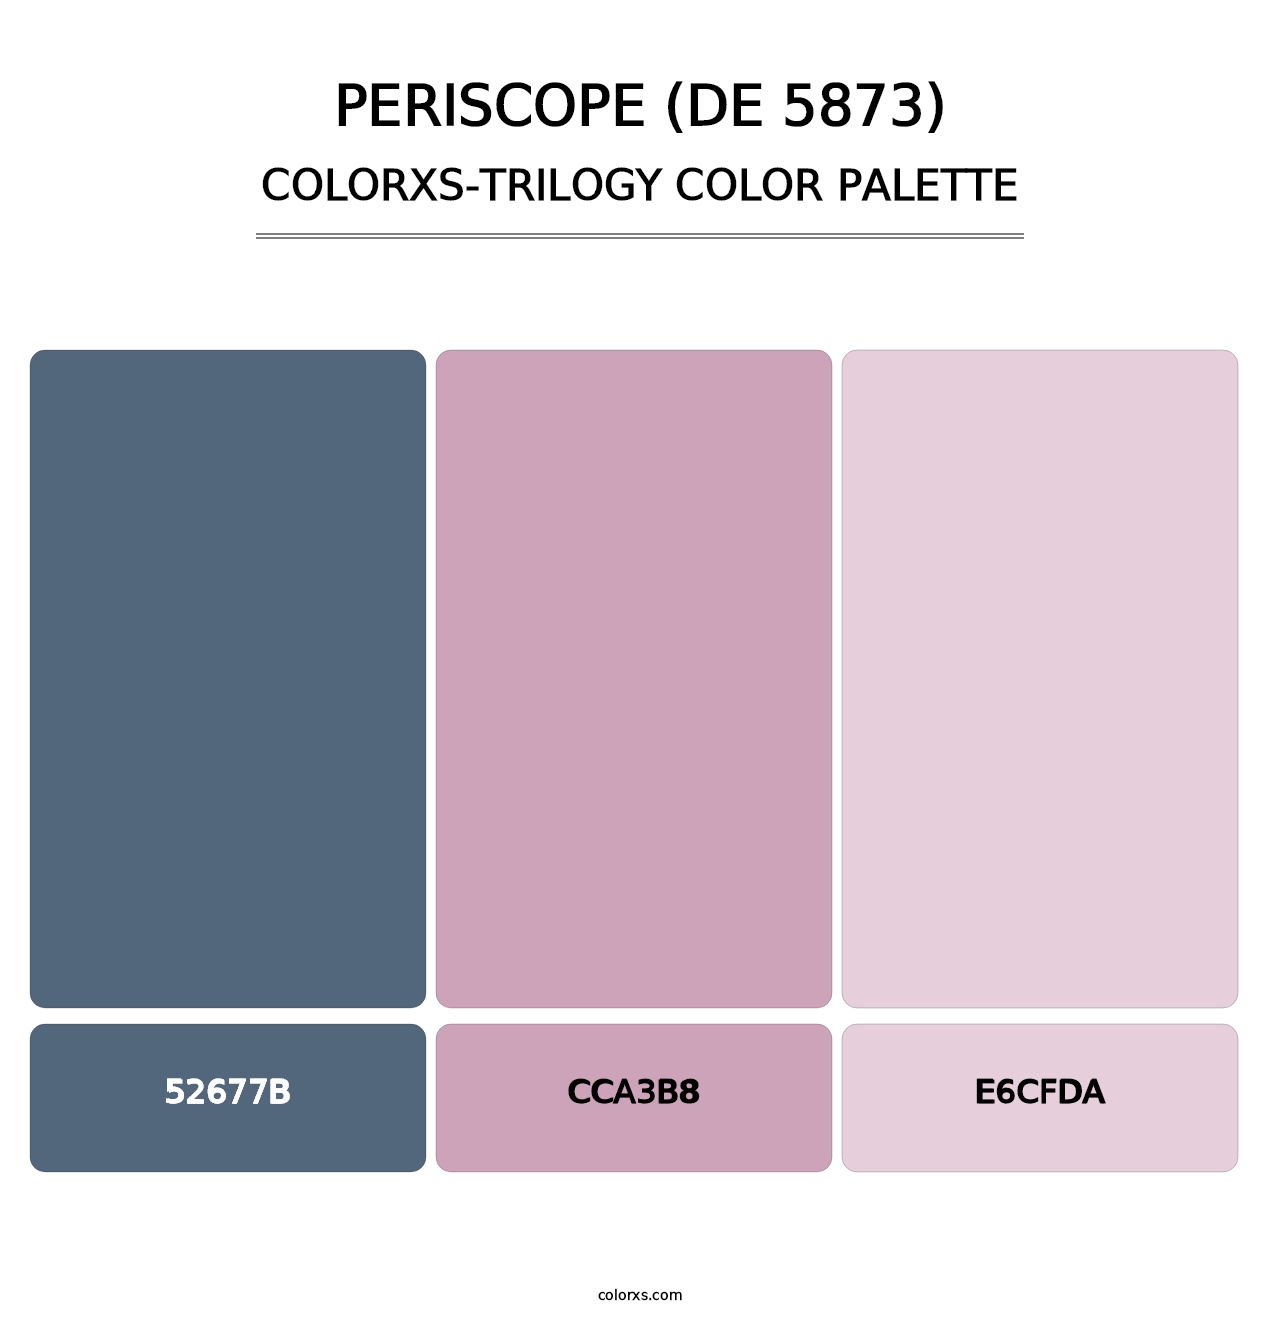 Periscope (DE 5873) - Colorxs Trilogy Palette